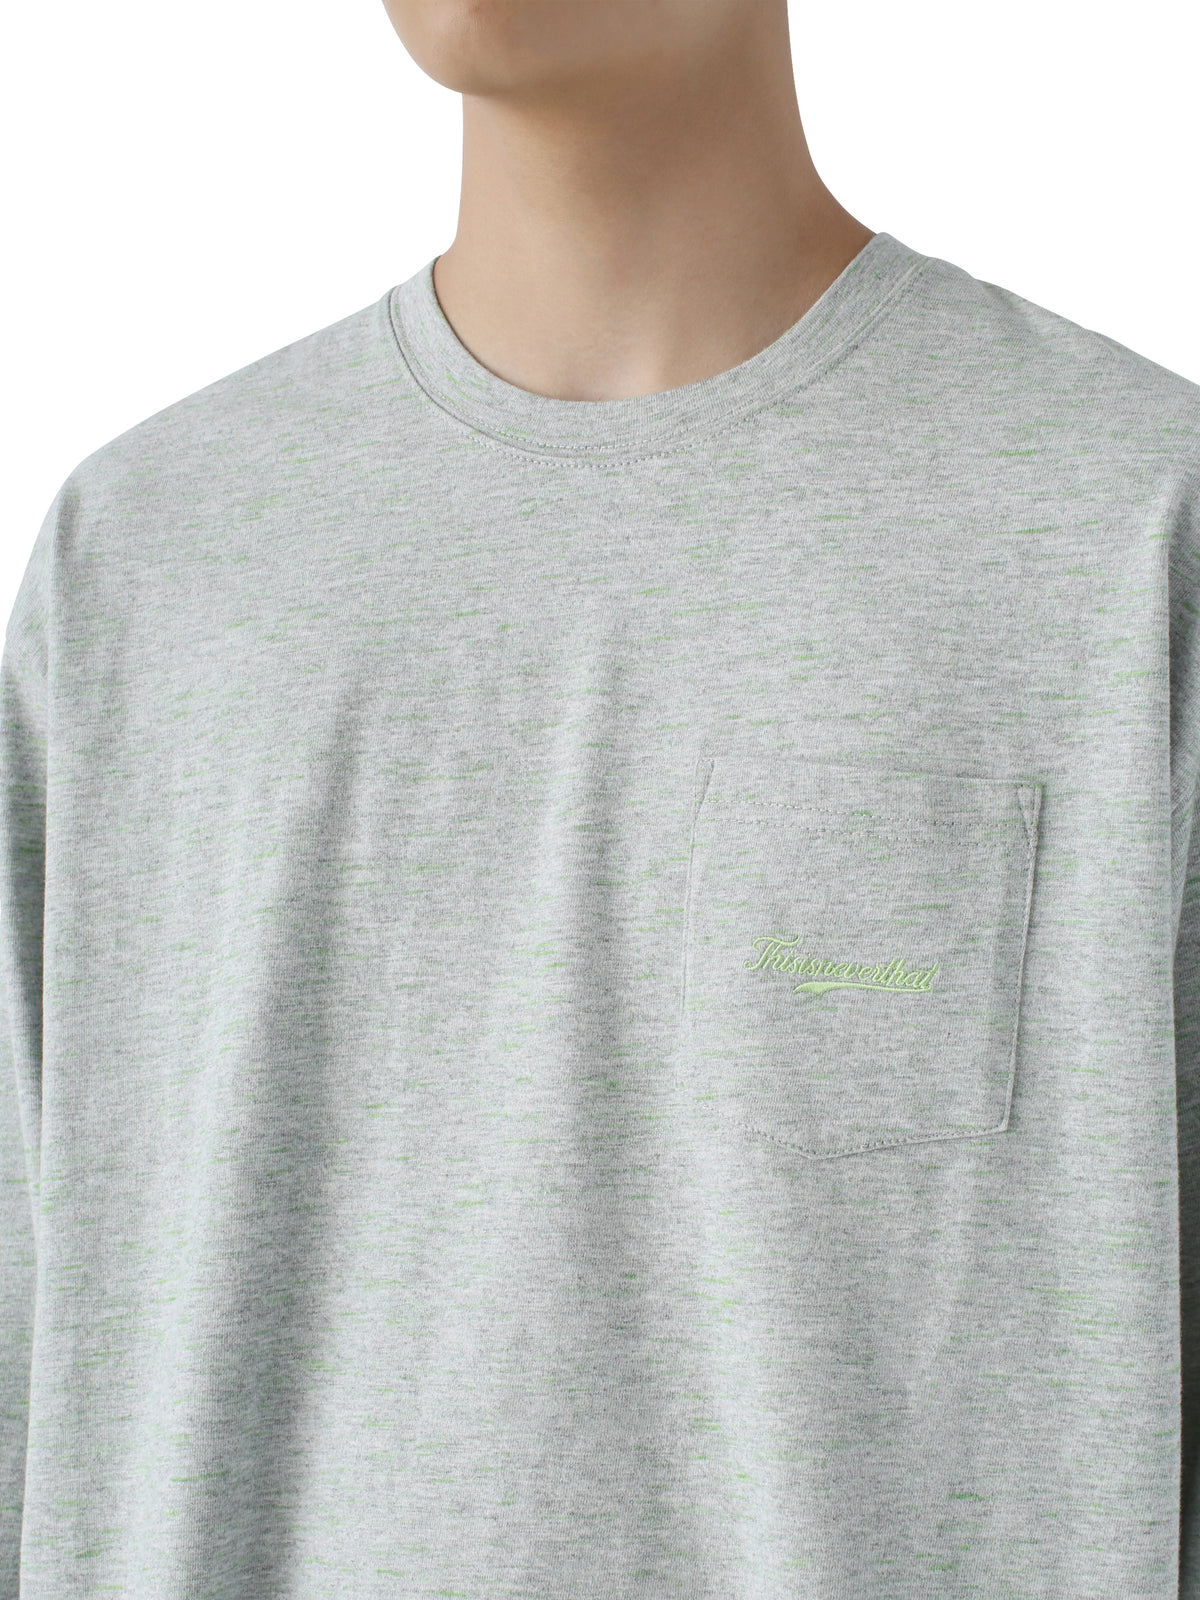 Neon Yarn L/SL Top L/SL T-Shirt 